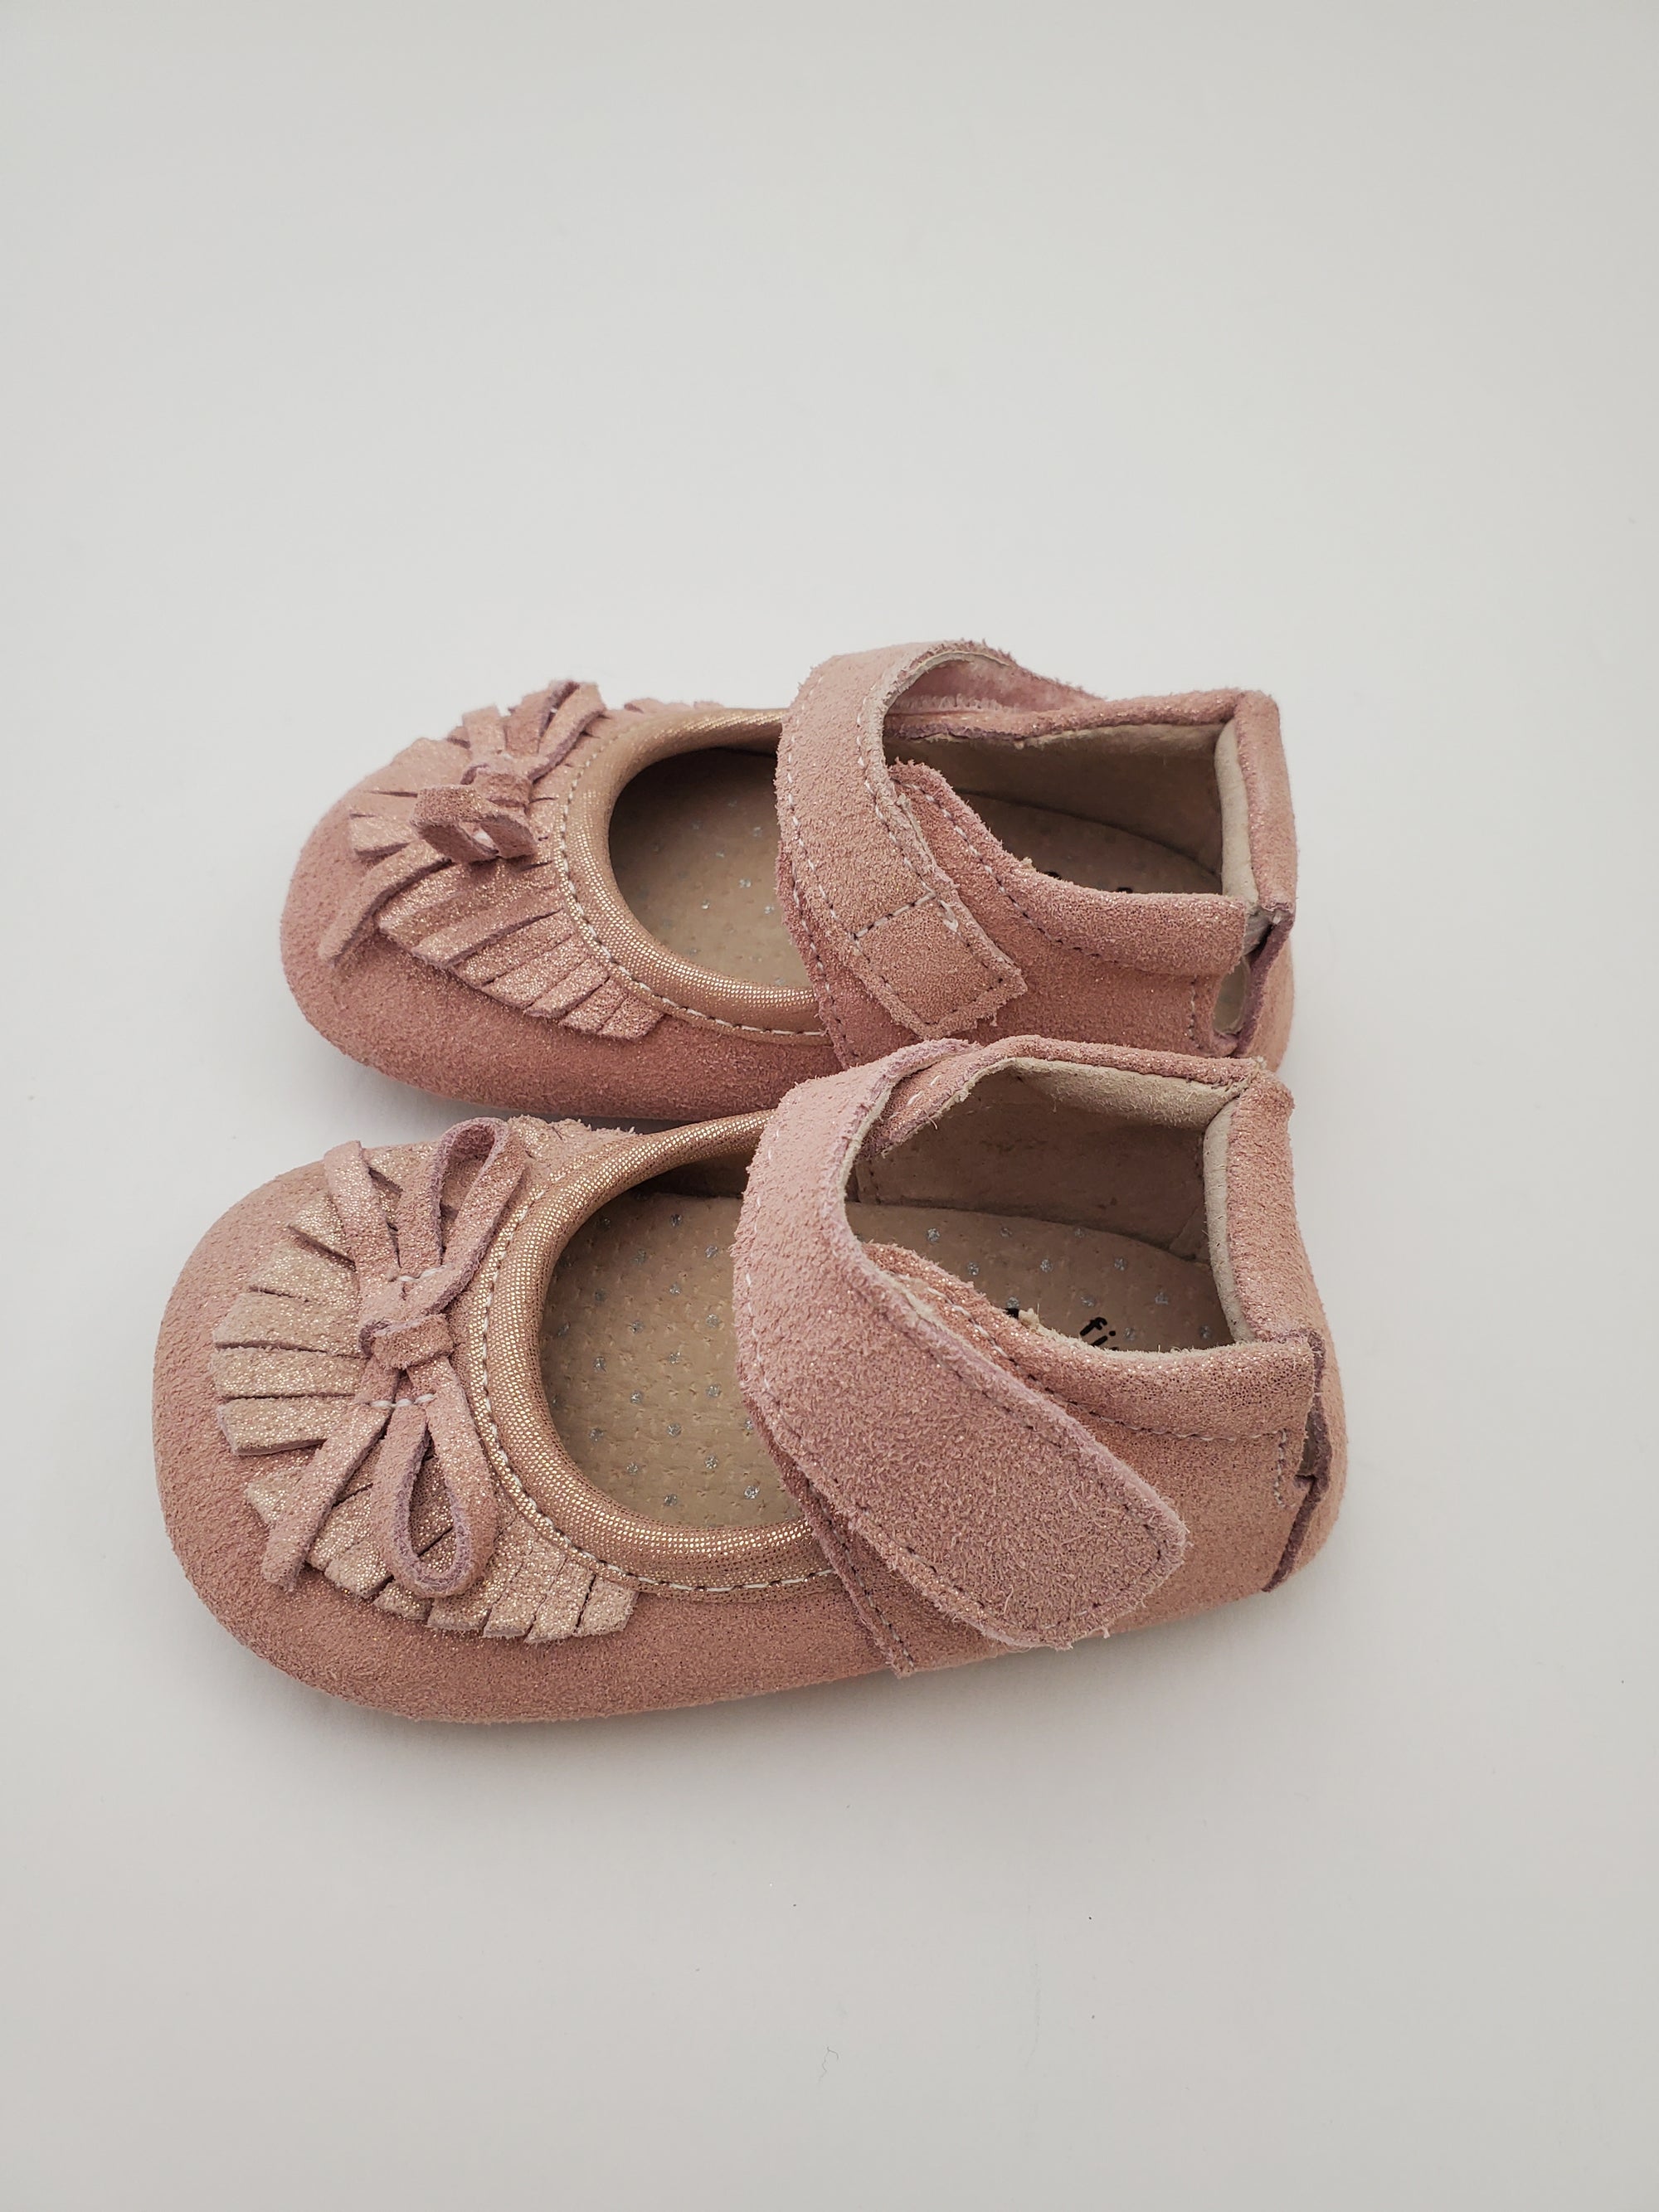 Livie & Luca Willow Crib Shoe in Desert Rose Shimmer (final sale)